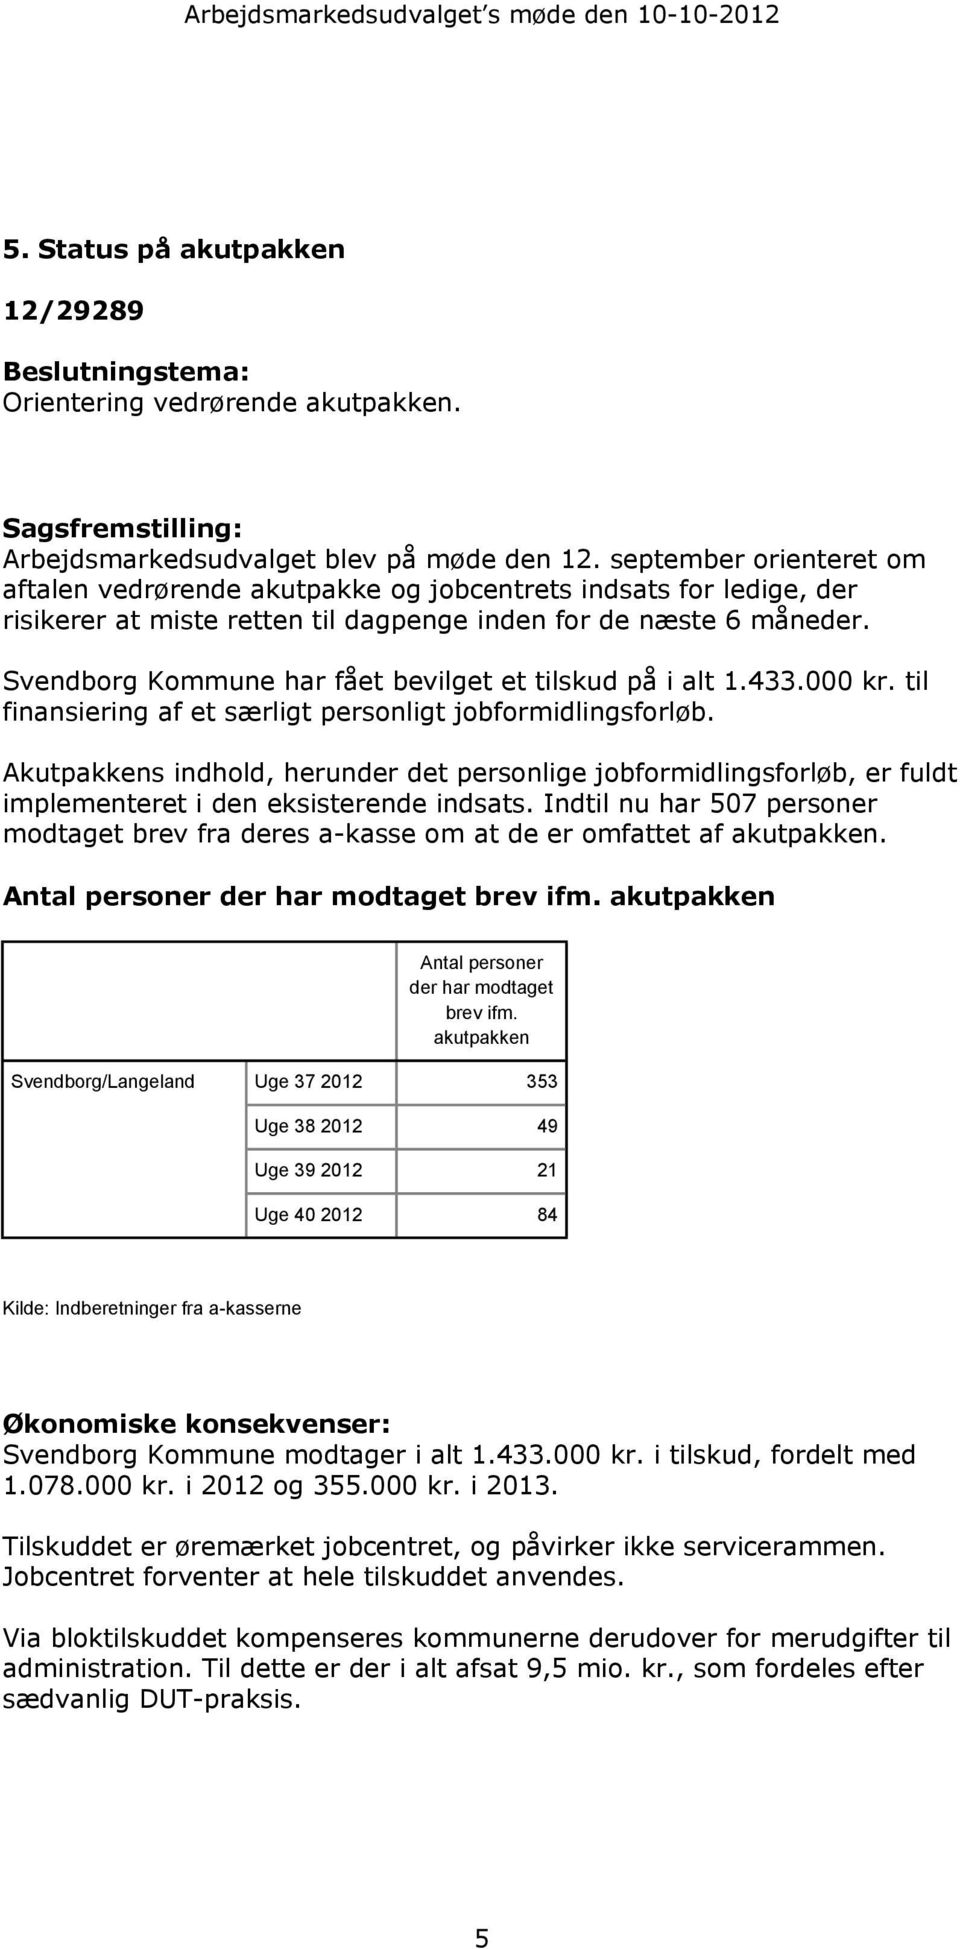 Svendborg Kommune har fået bevilget et tilskud på i alt 1.433.000 kr. til finansiering af et særligt personligt jobformidlingsforløb.